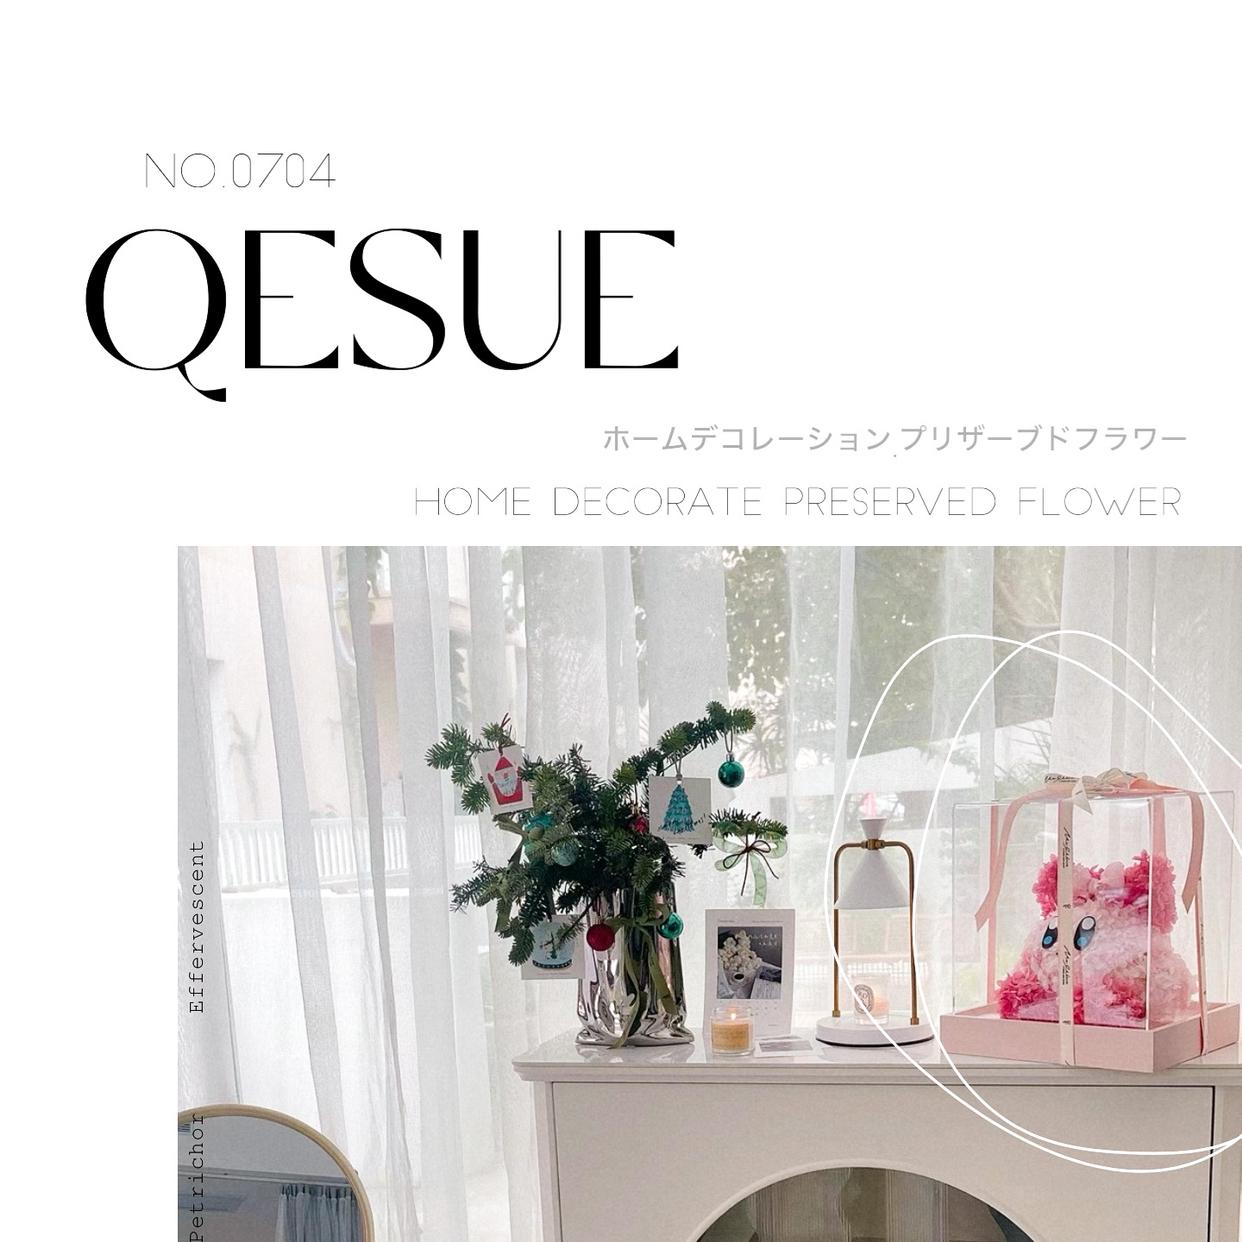 Qesue.jp の画像